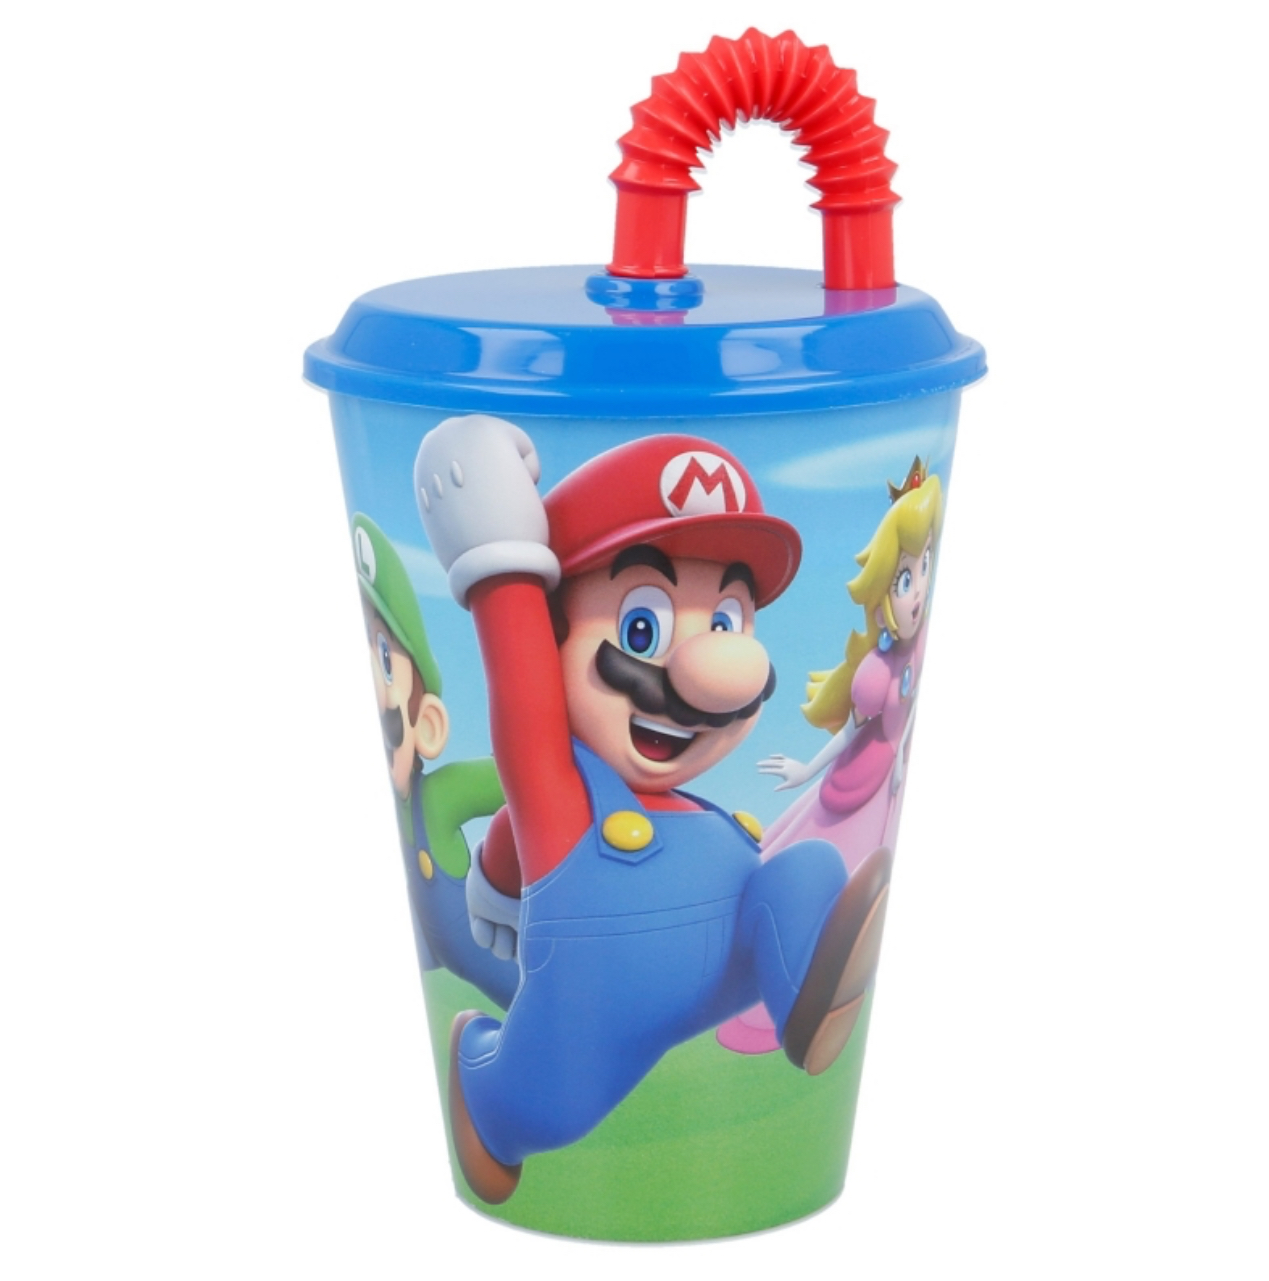 Super Mario plastmugg med sugrör och lock